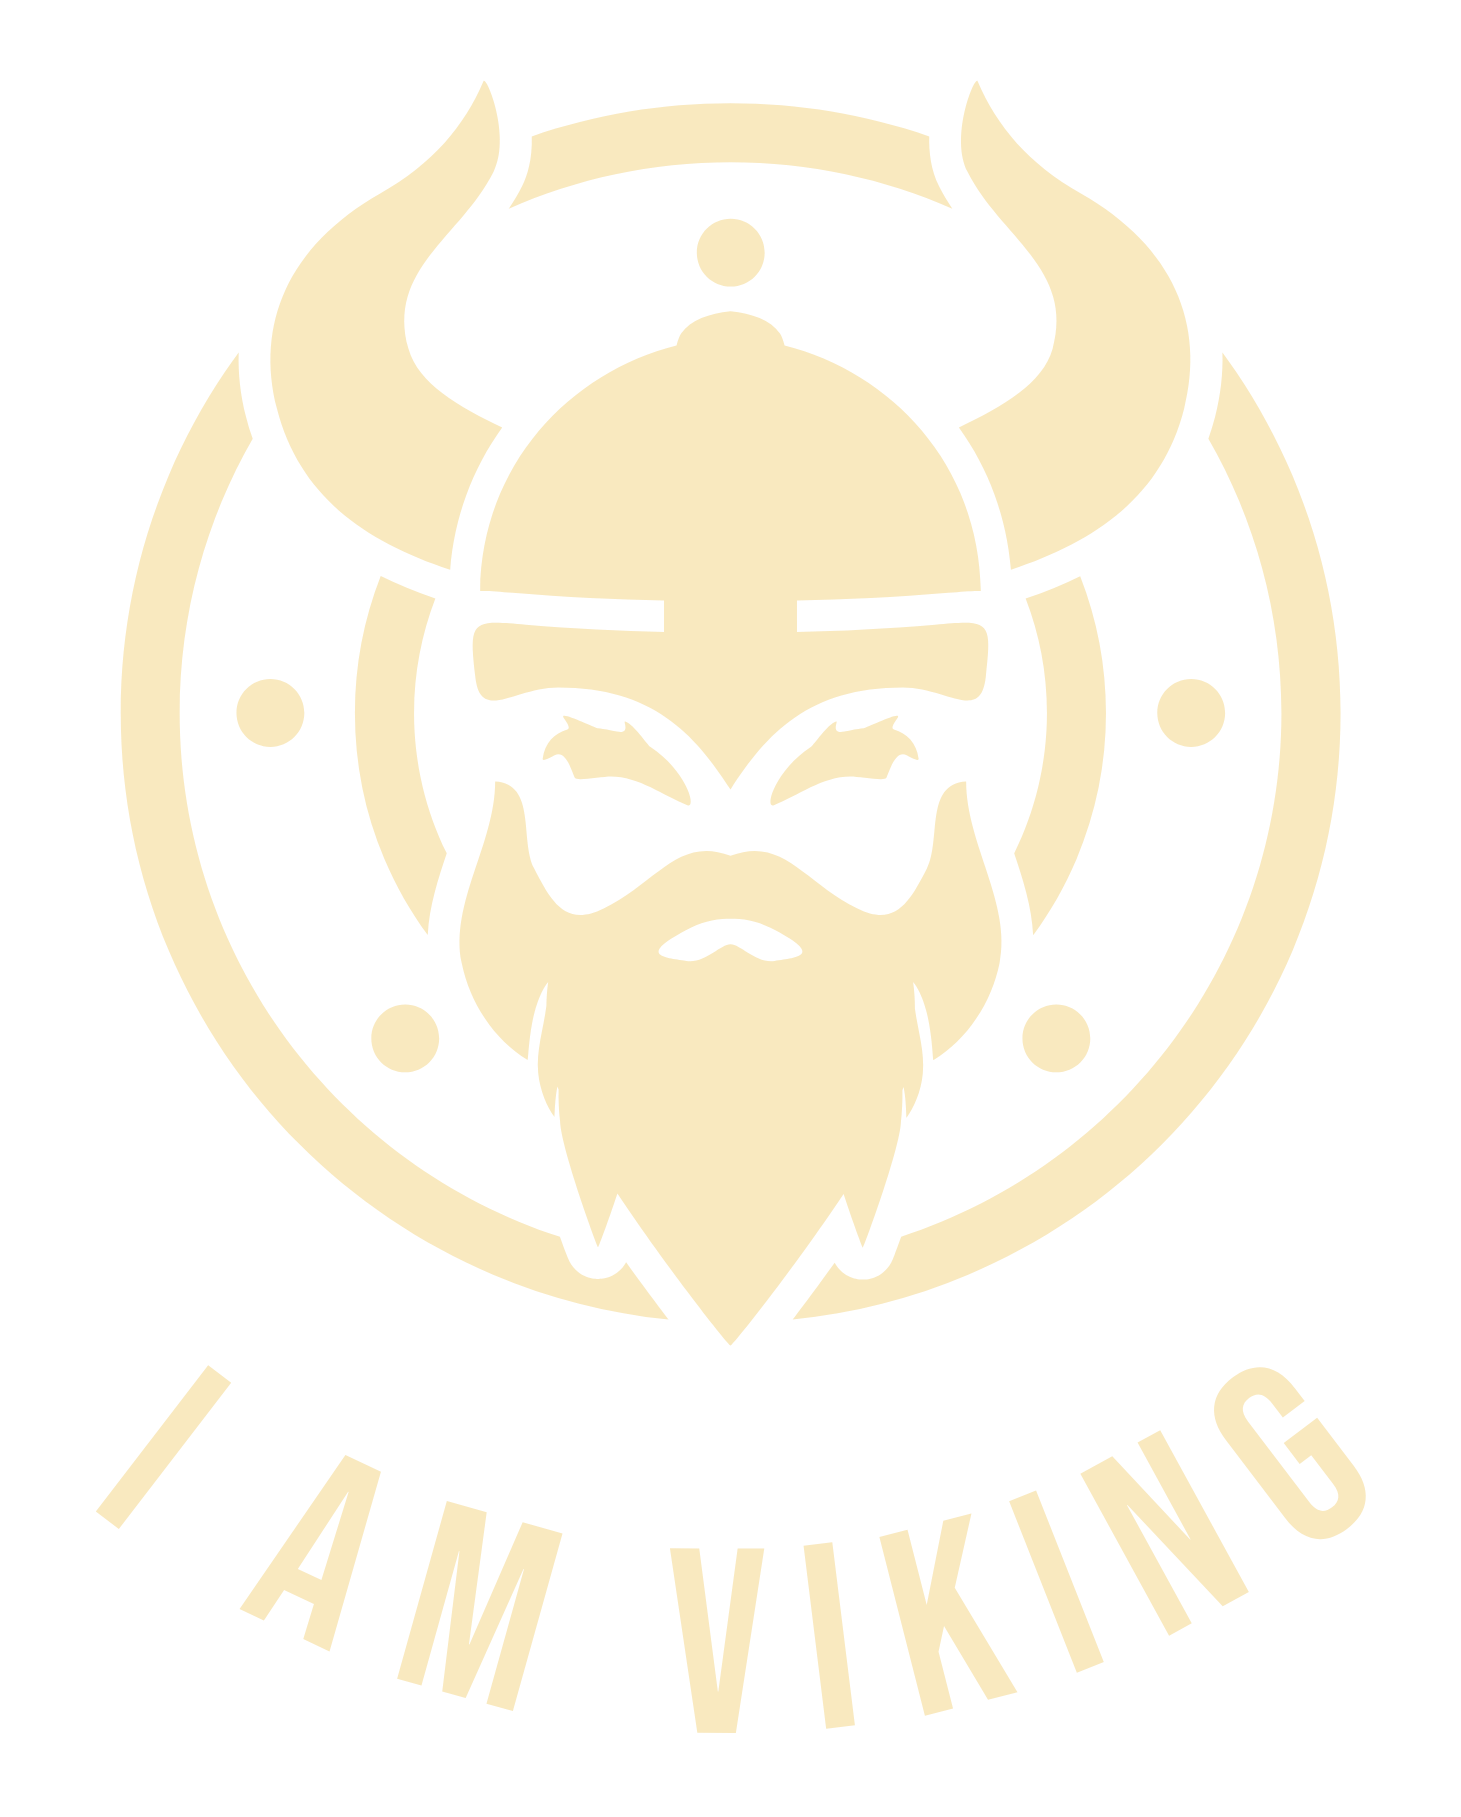 i am viking logo